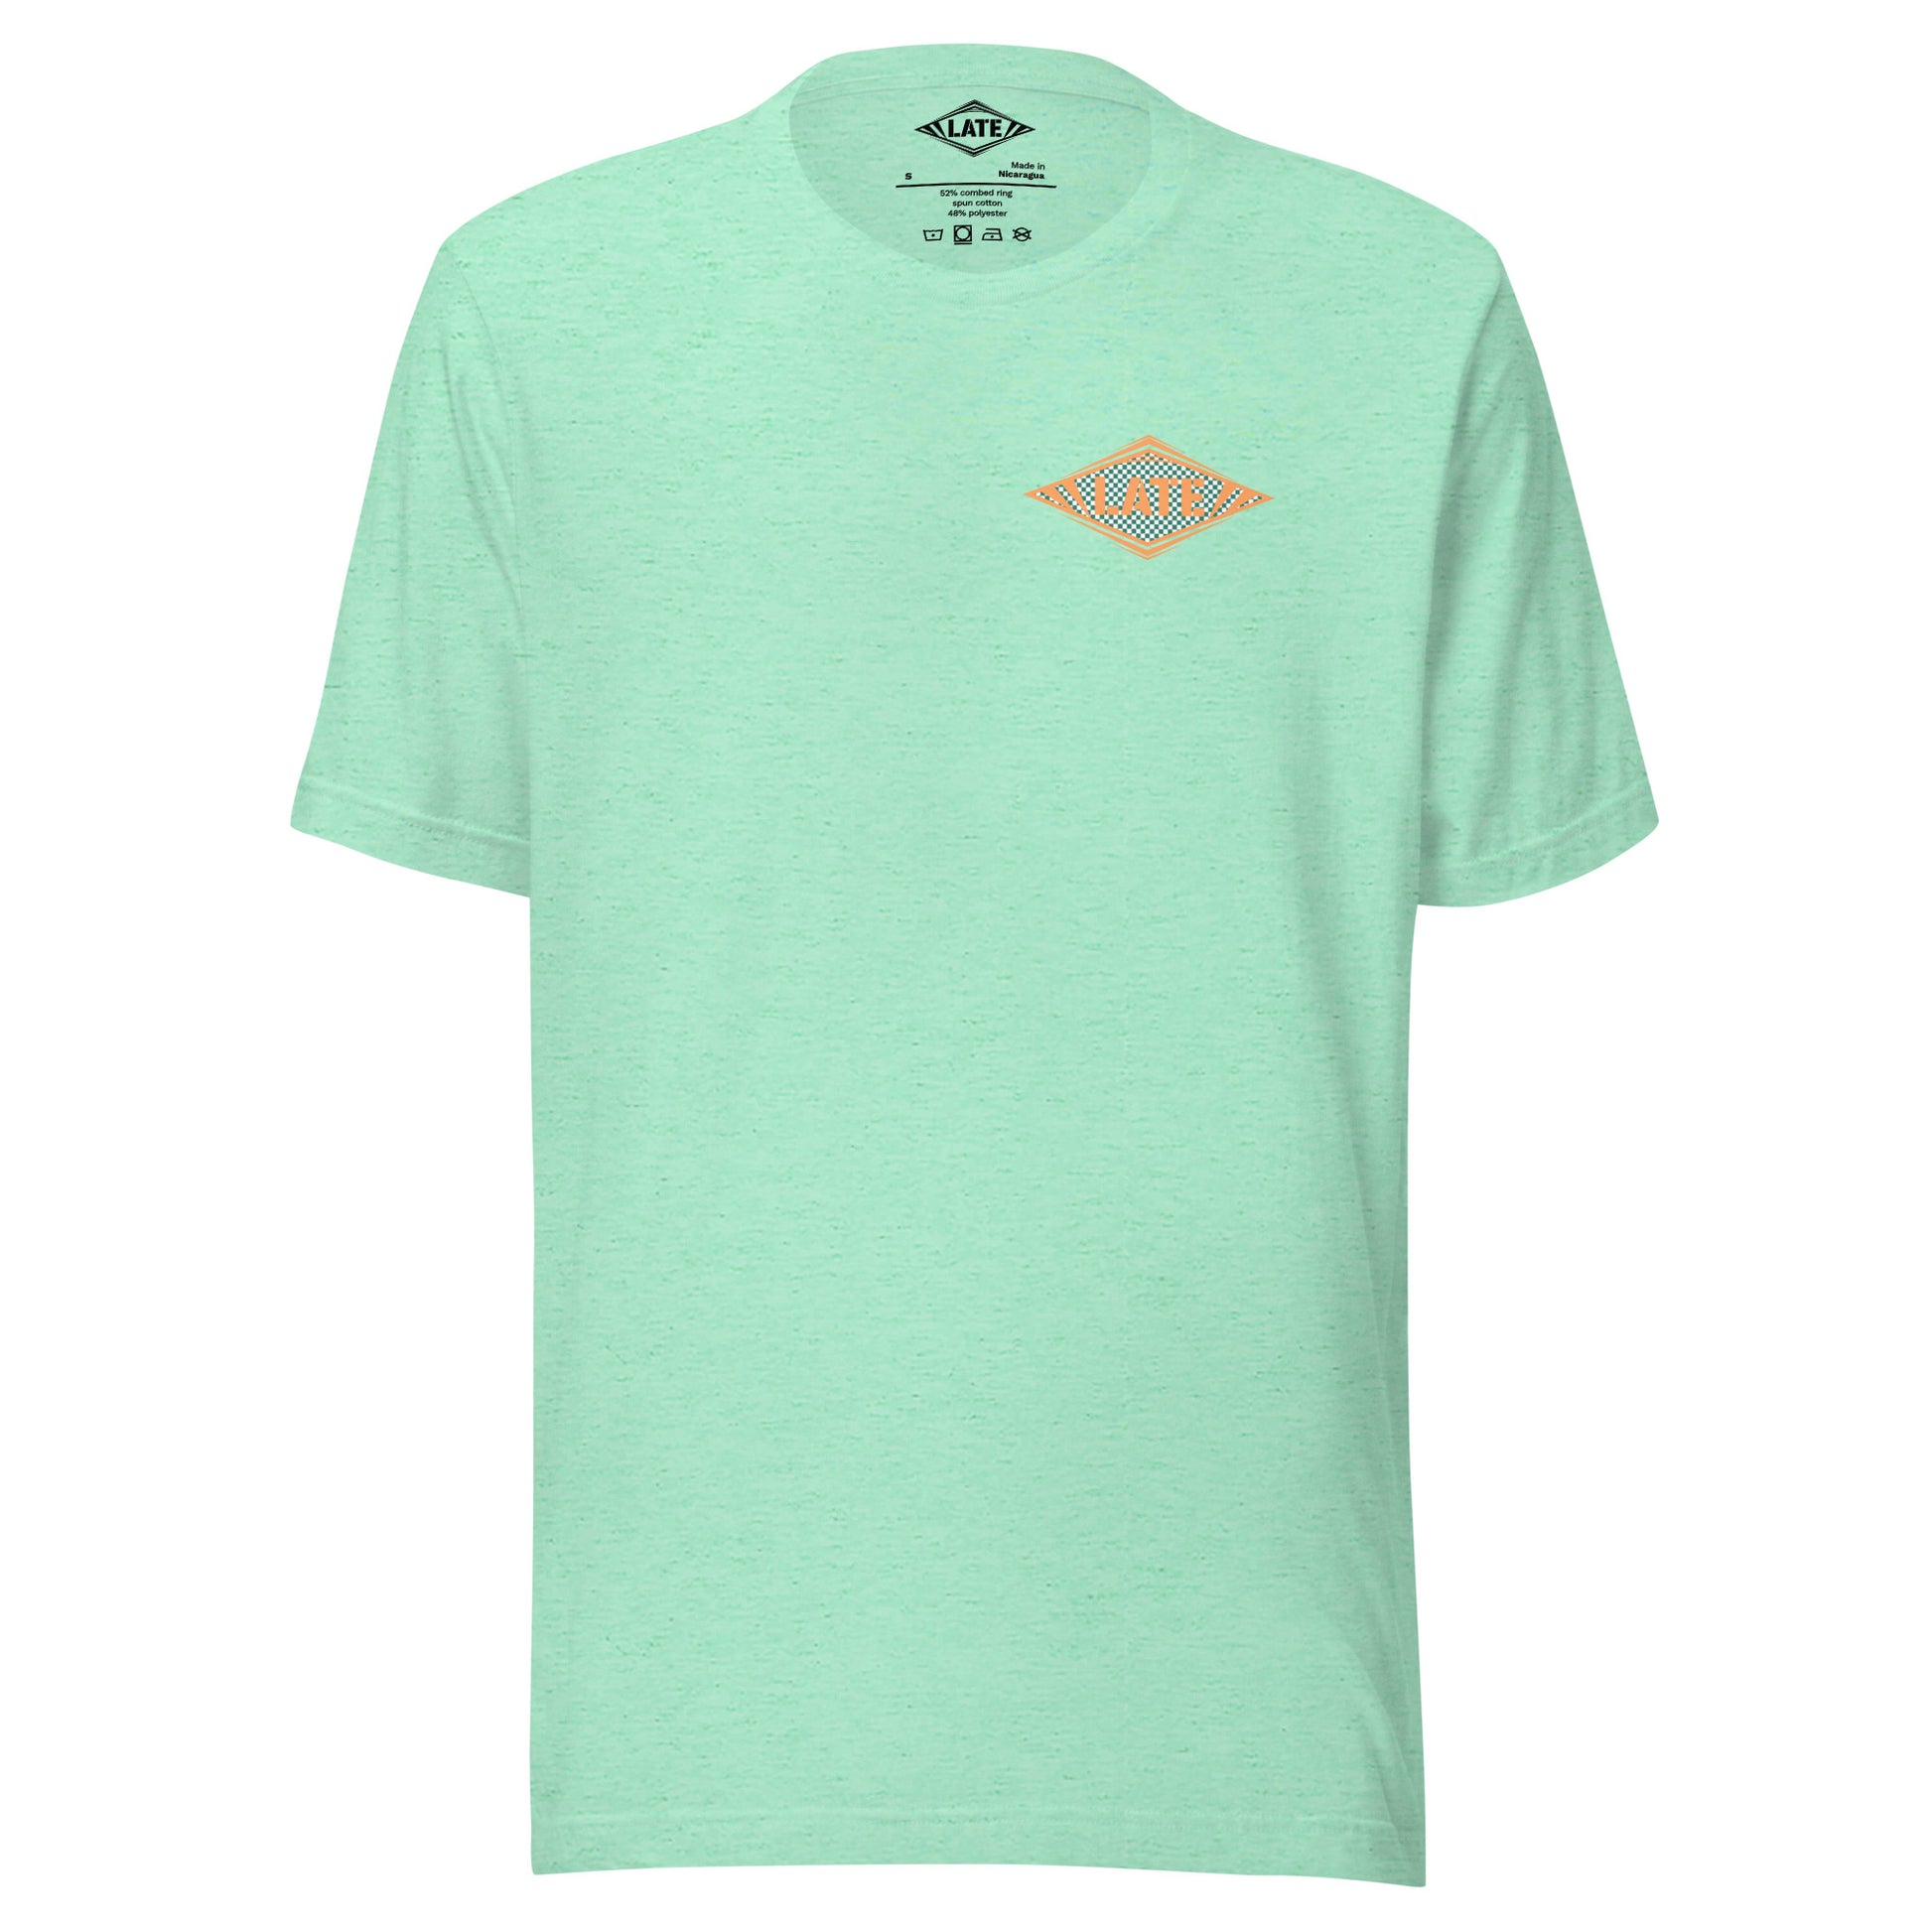 T-Shirt Shred It skateboard style Vans logo Late à carreaux. T-Shirt unisex de face couleur vert menthe